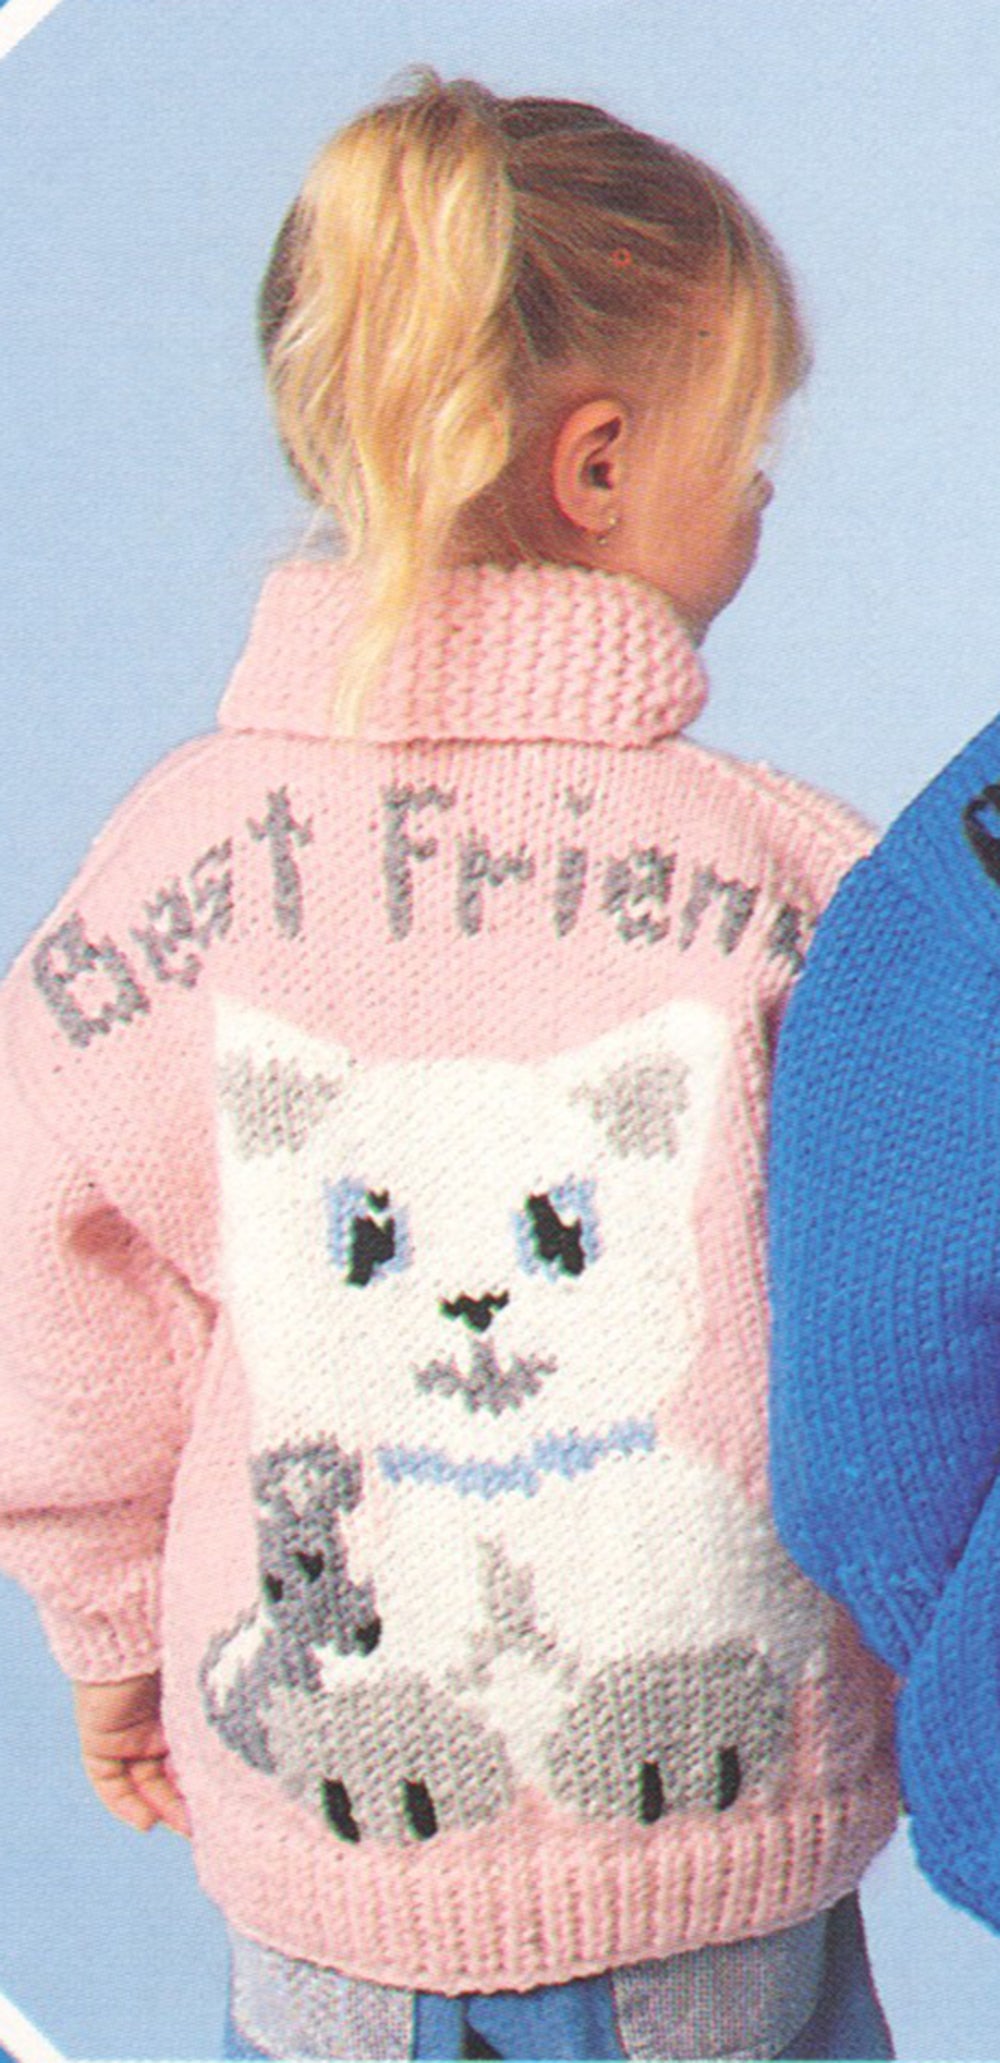 Best Friend Kitten Jacket Pattern